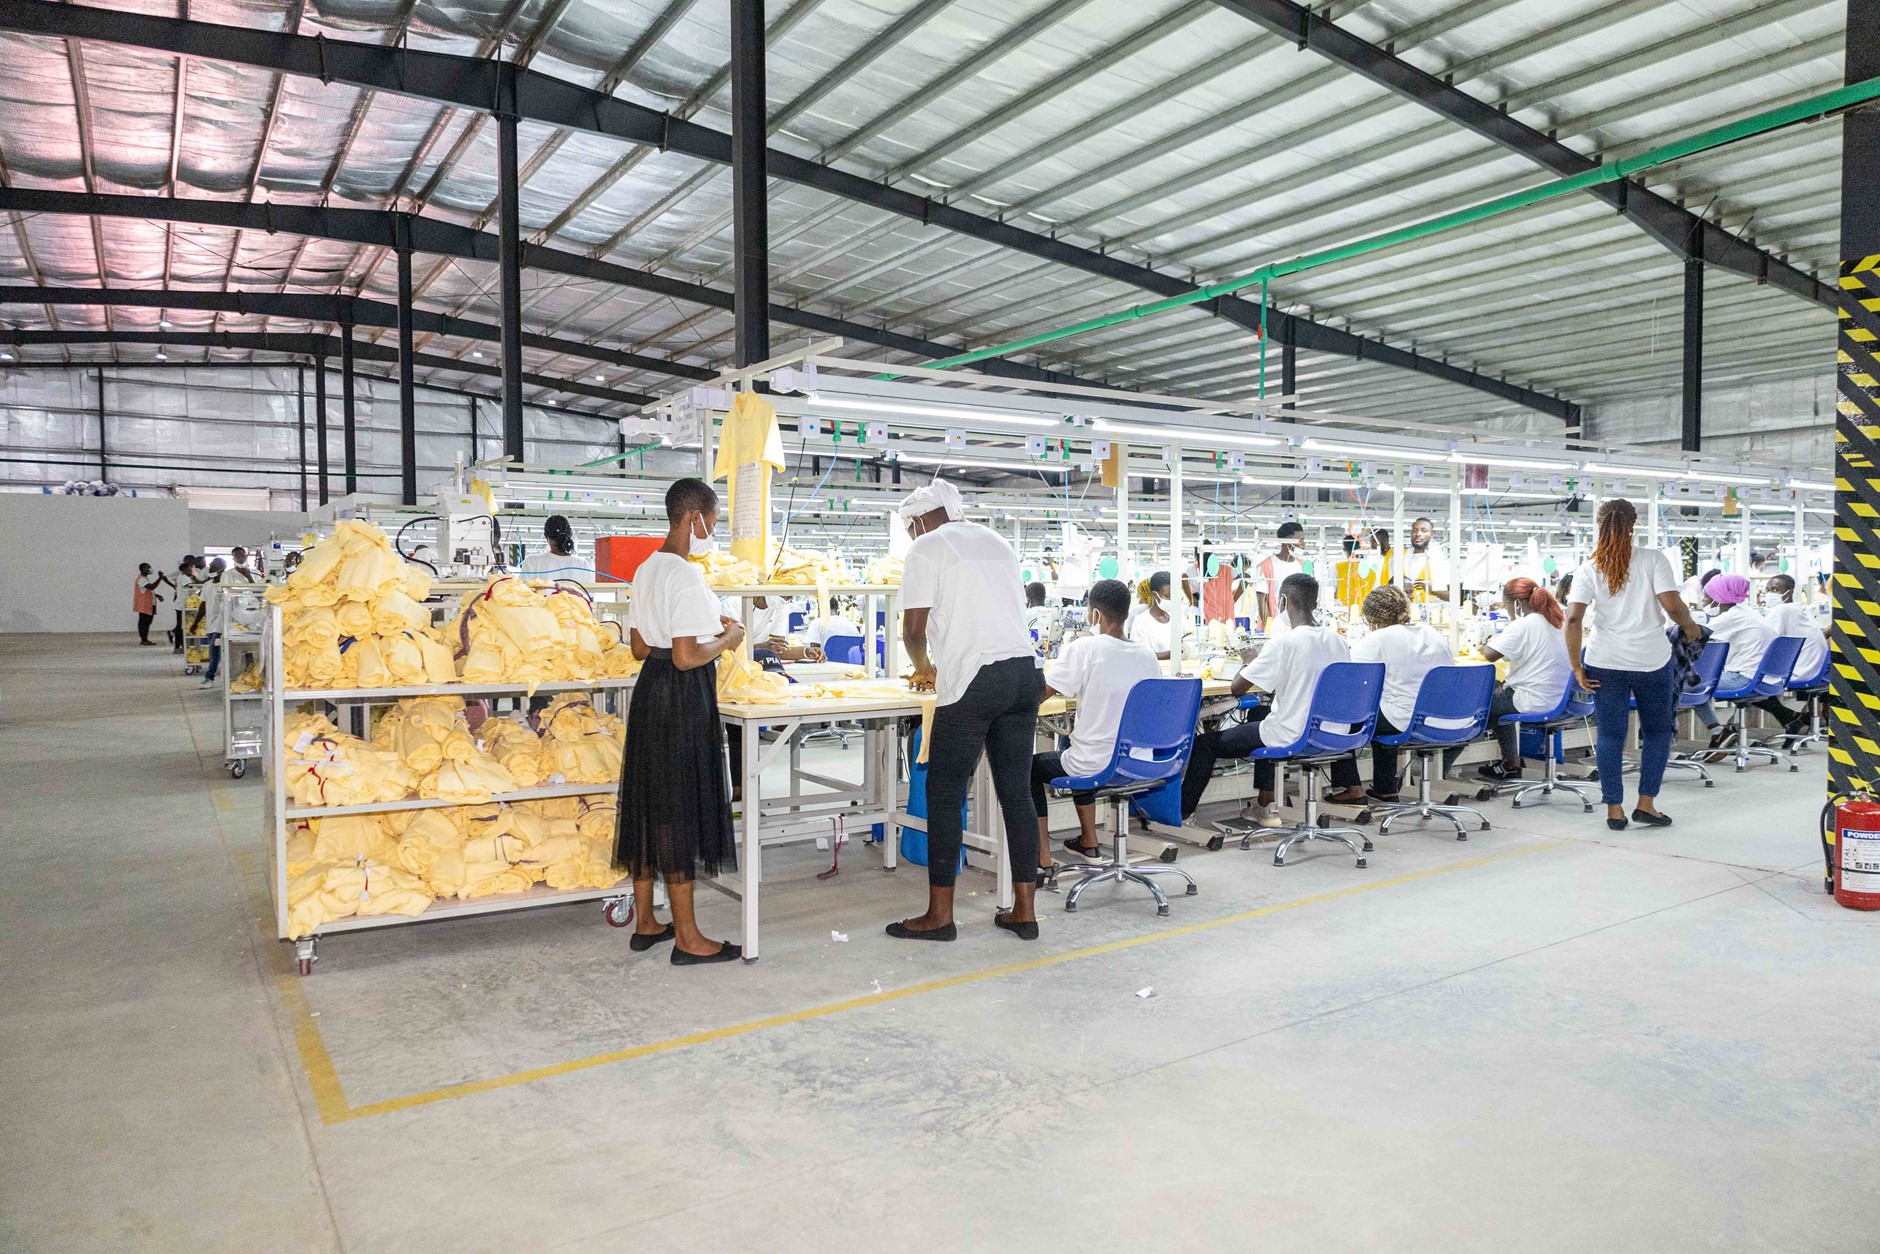 industrie-textile-le-groupe-star-garments-s-installe-a-la-pia